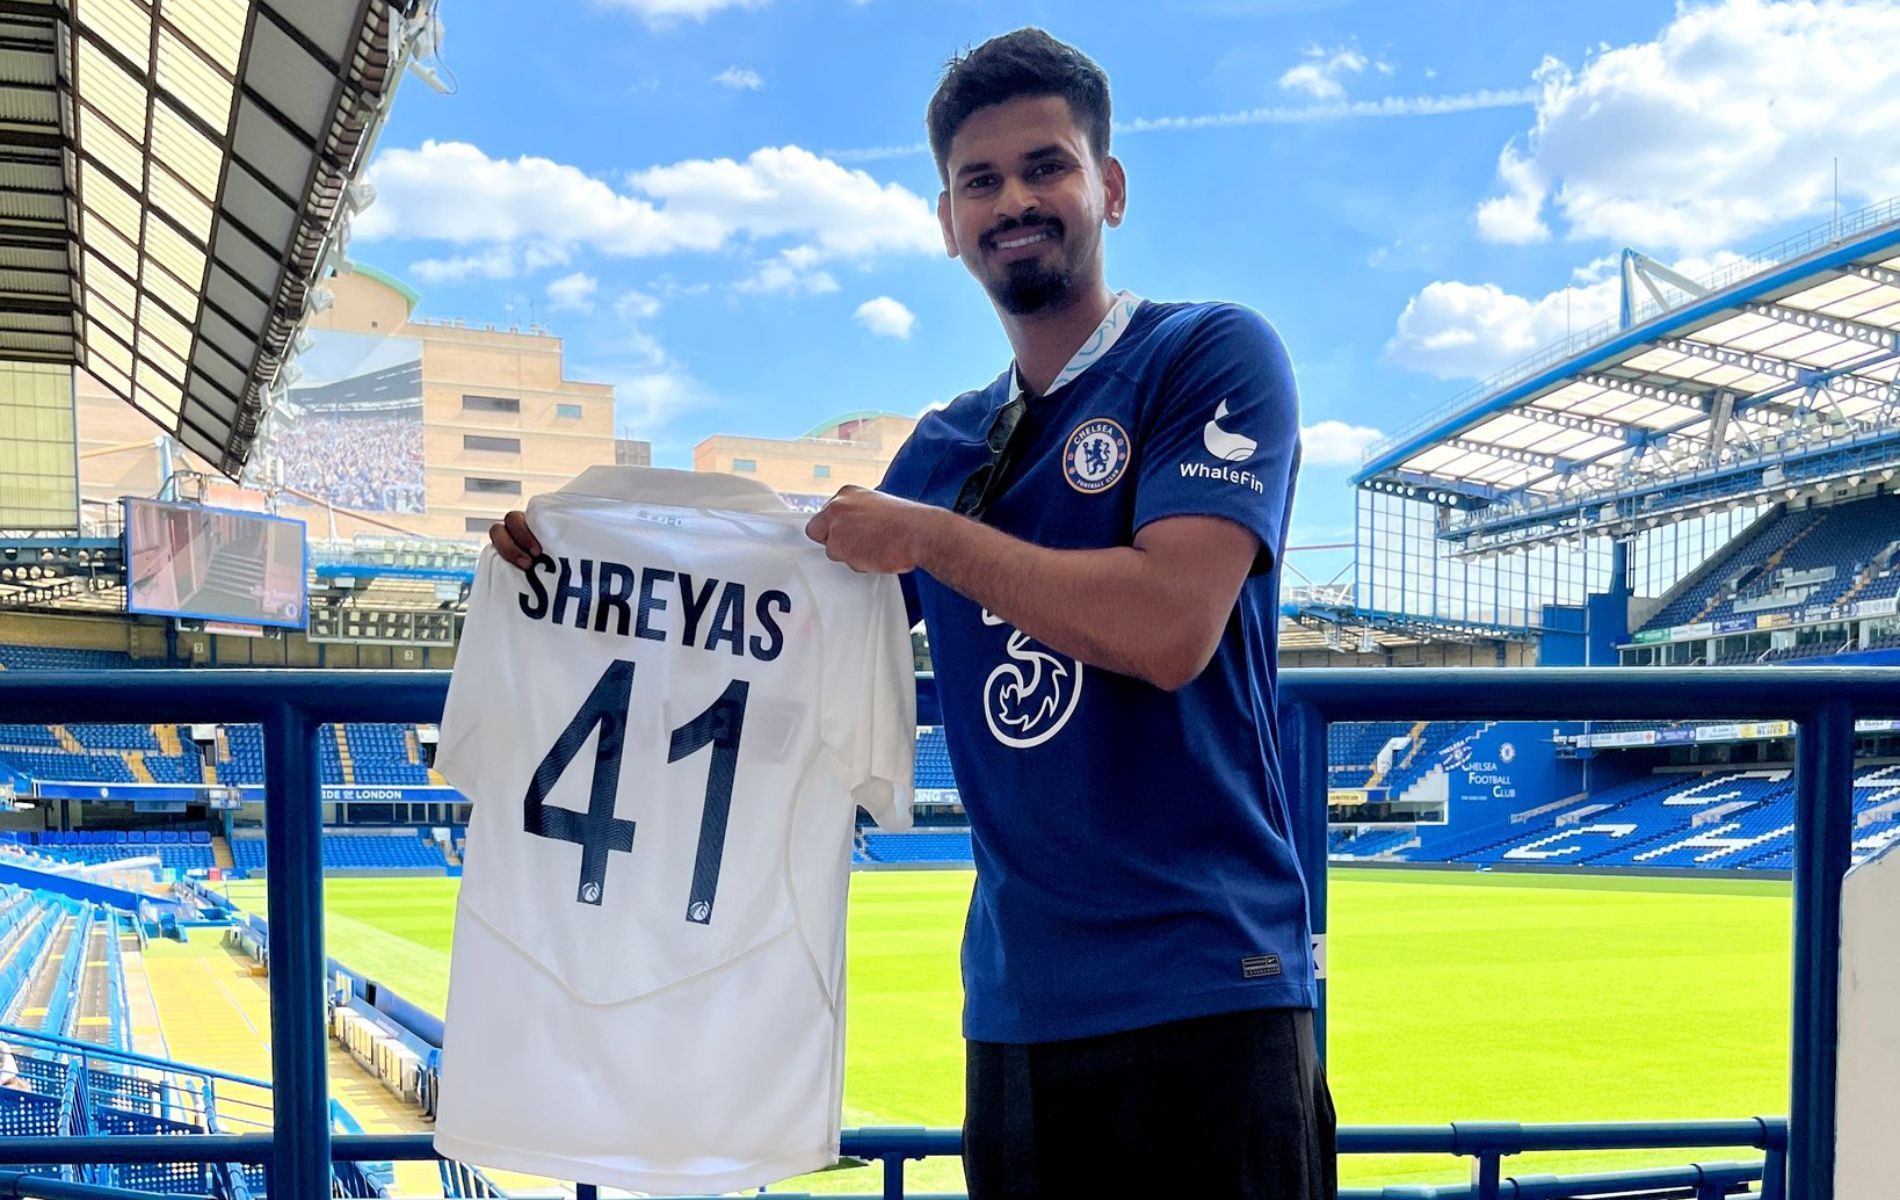 Shreyas Iyer at Stamford Bridge. (Pic: Twitter)